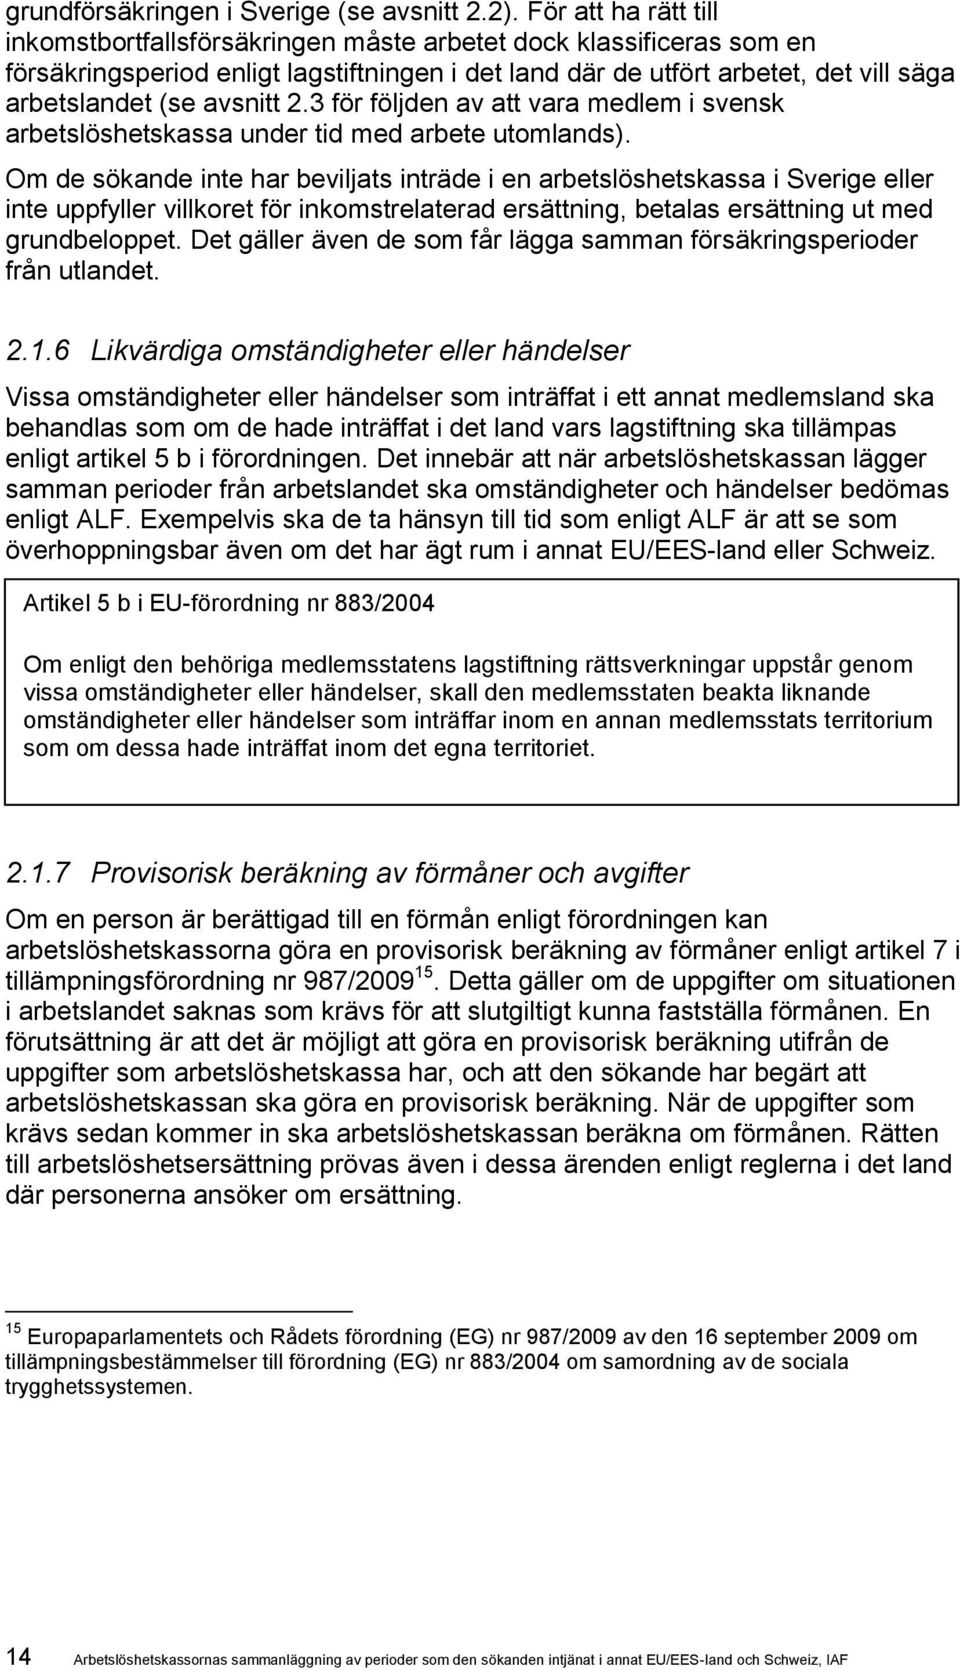 avsnitt 2.3 för följden av att vara medlem i svensk arbetslöshetskassa under tid med arbete utomlands).